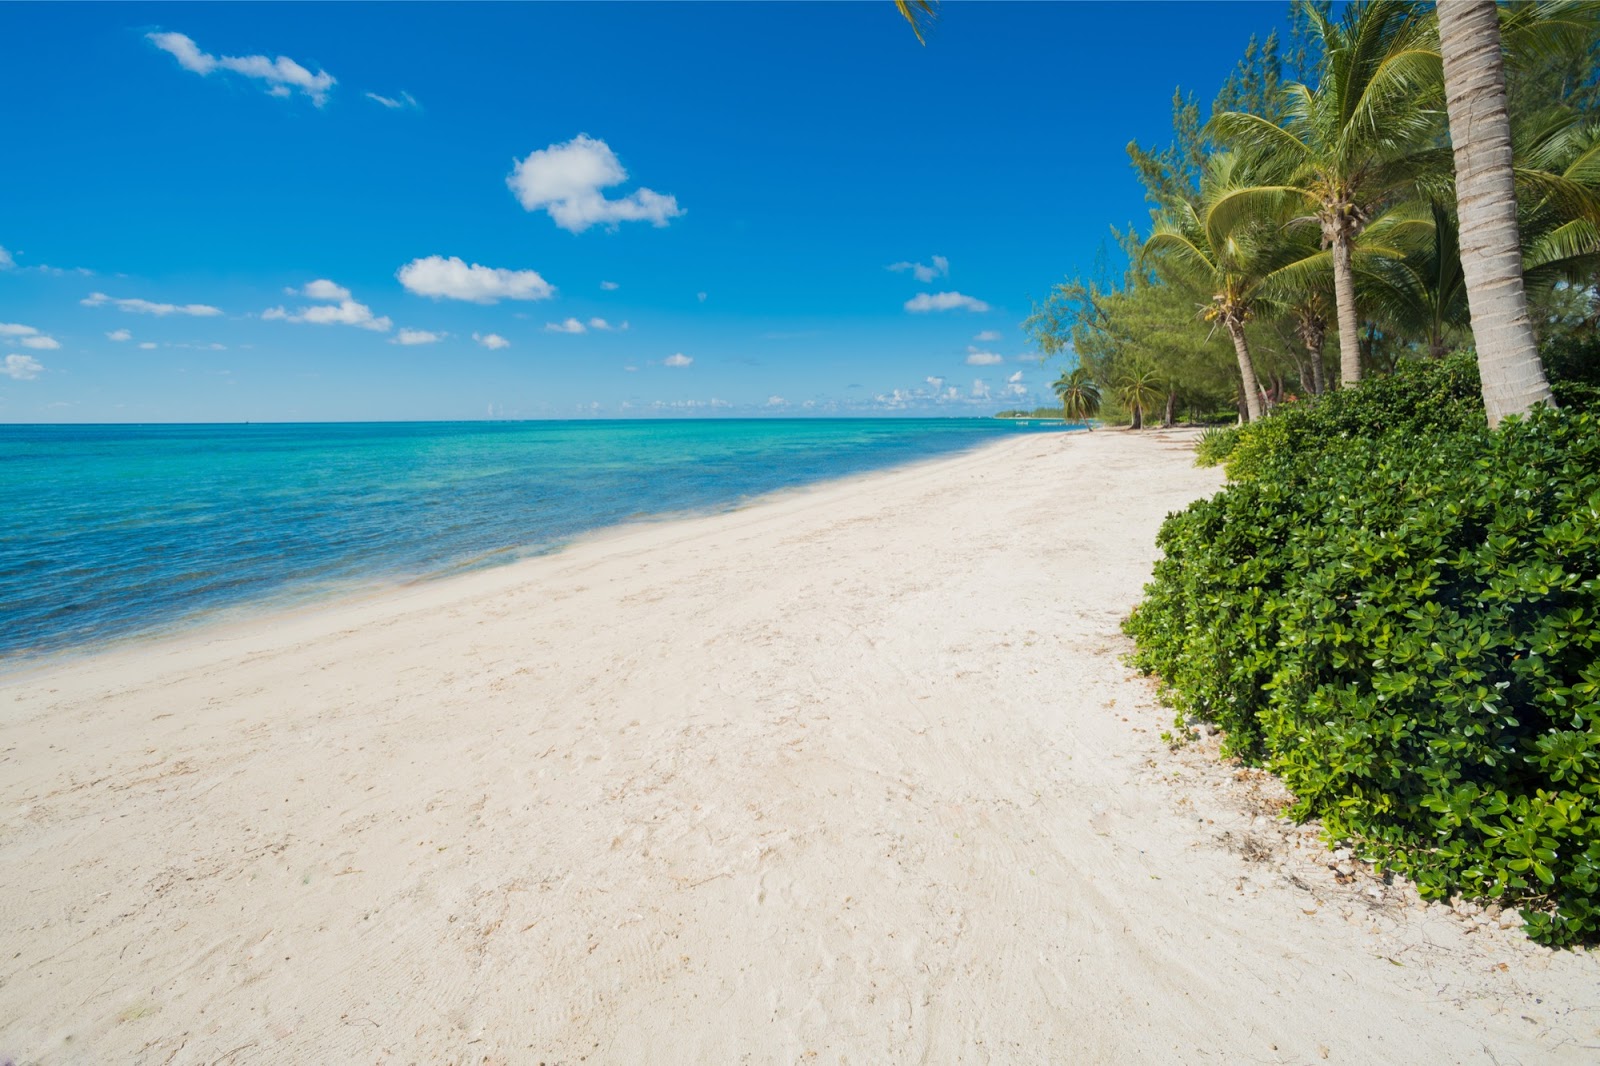 Foto di Cayman Villas beach con una superficie del sabbia fine e luminosa